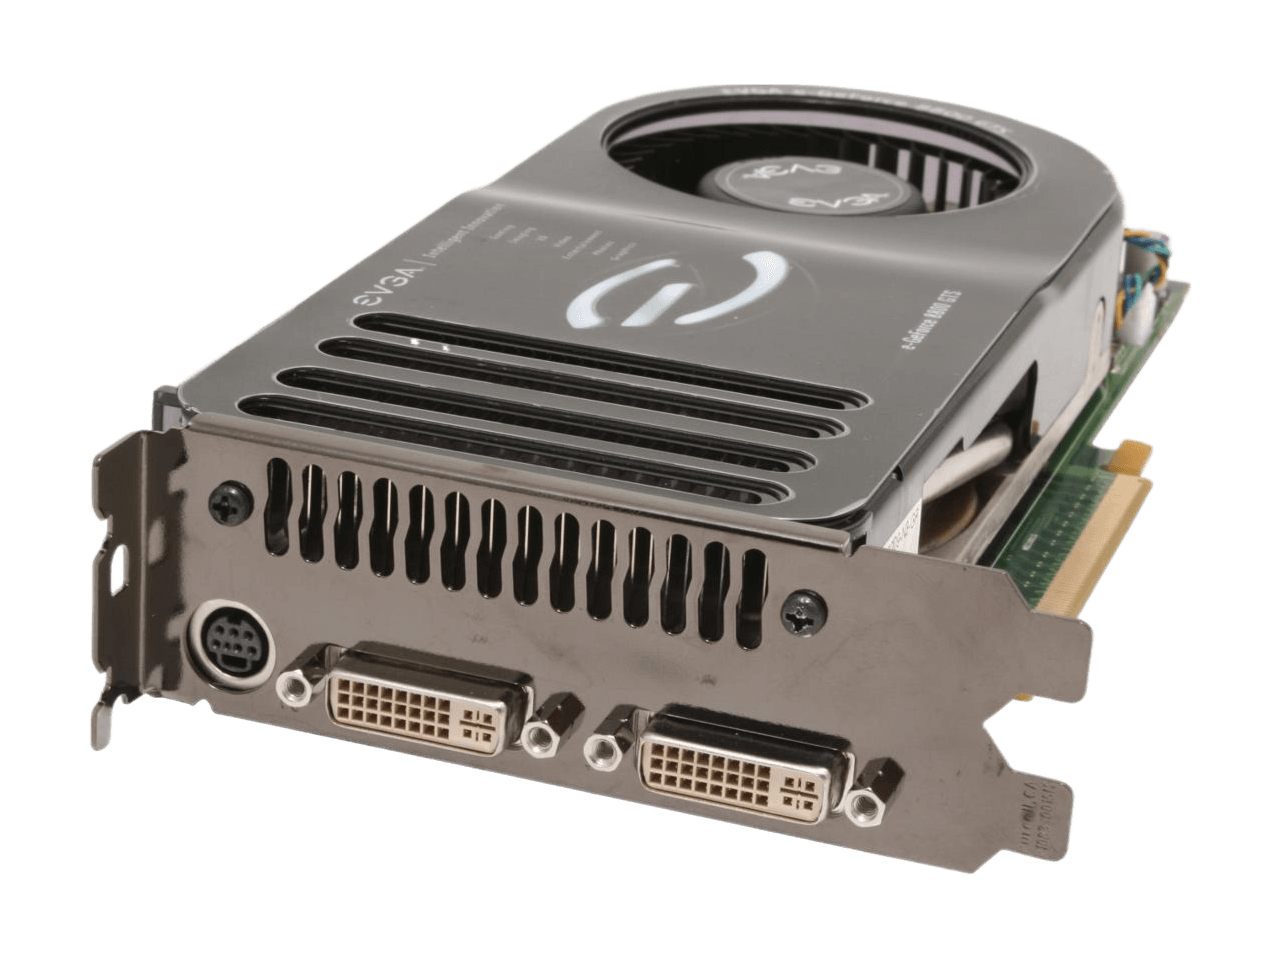 EVGA GeForce 8800 GTS 320MB GDDR3 PCI Express x16 SLI Support Video Card 320-P2-N811-RX